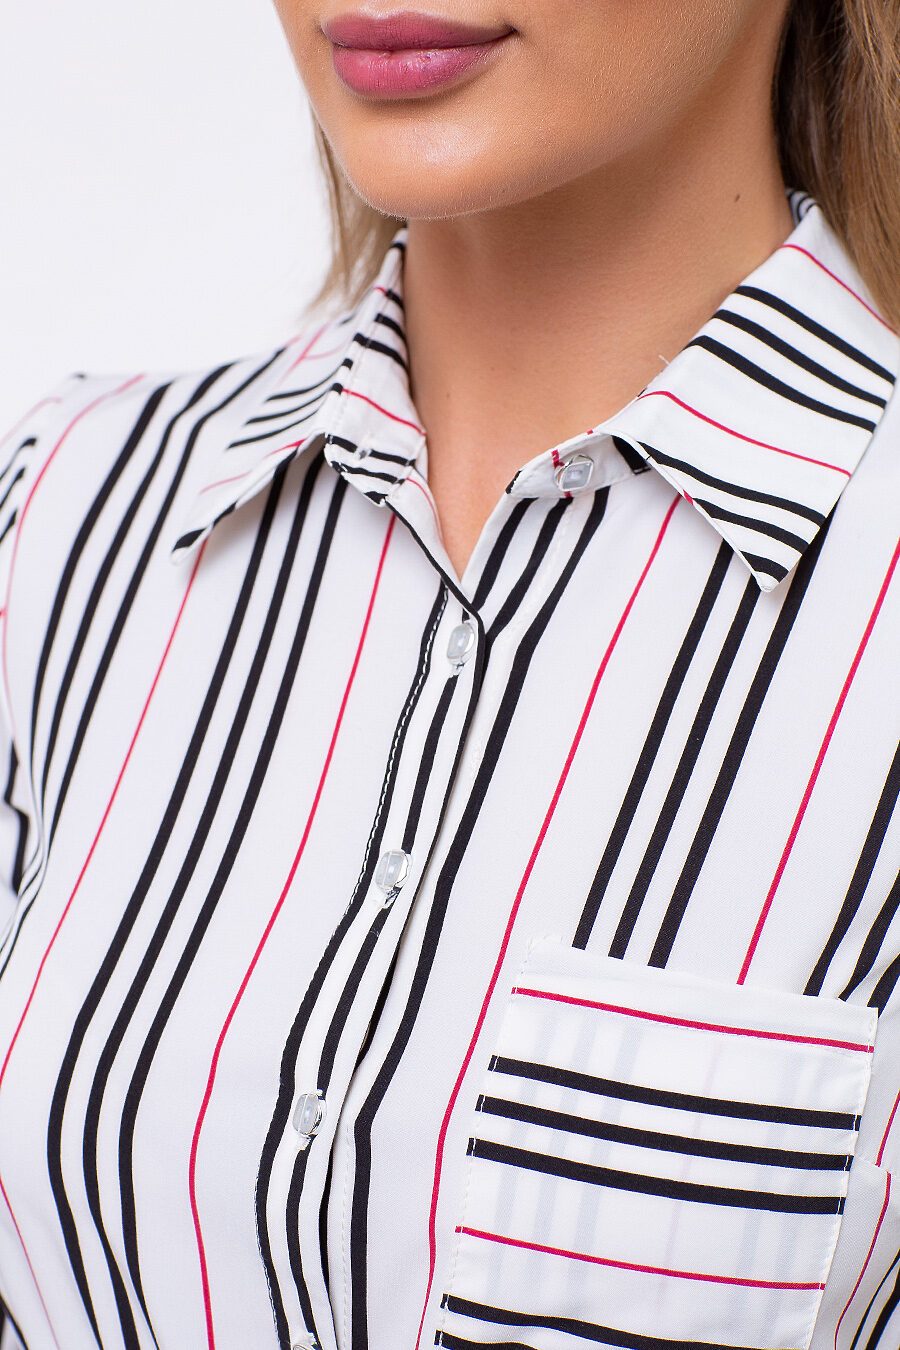 Блуза TUTACHI (125205), купить в Moyo.moda